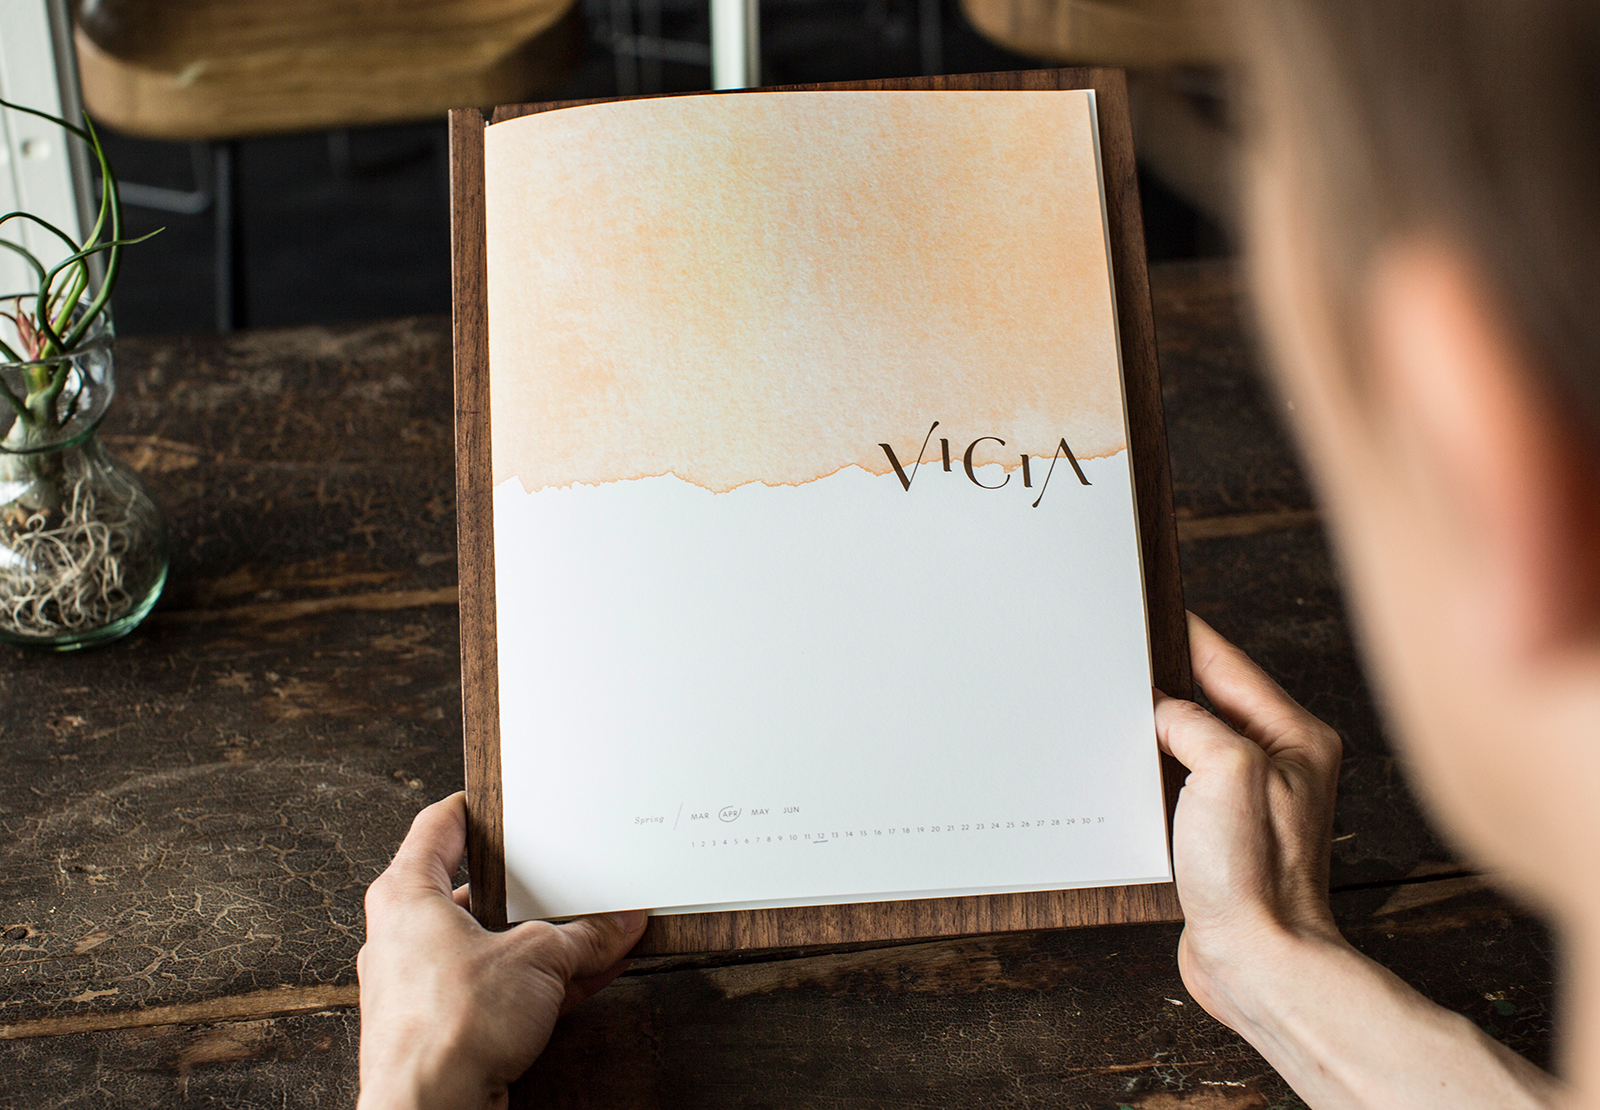 Vicia menu in hands